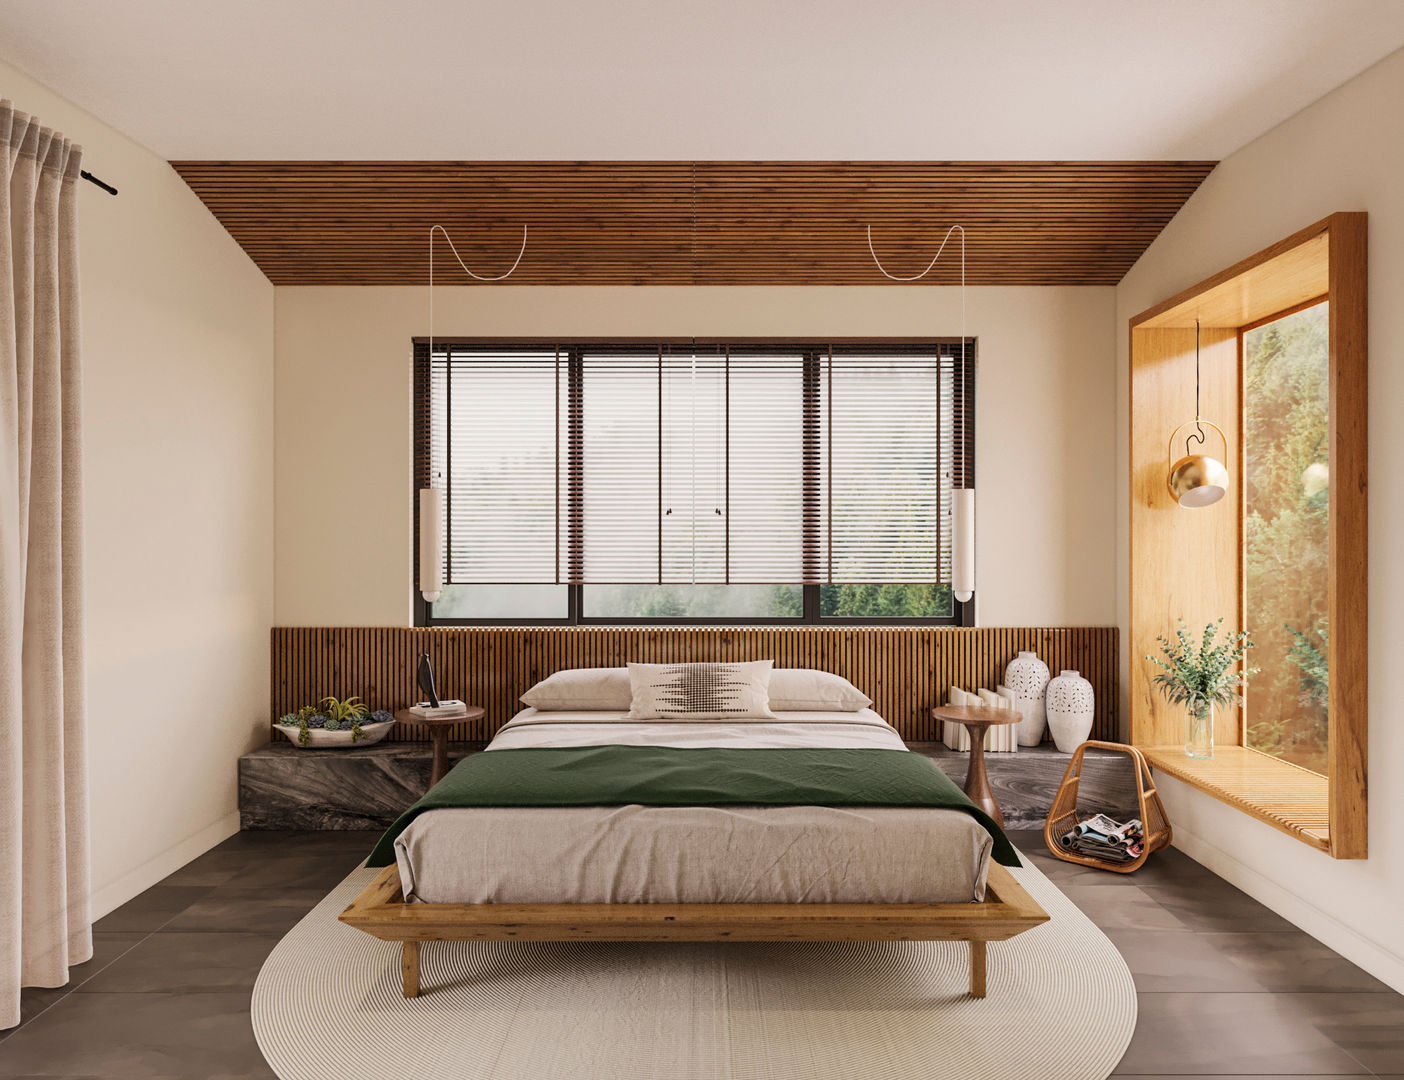 Thiết kế nội thất phong cách Rustic cho biệt thự Dương Nội, Kiến Trúc và Nội thất V.Scale Kiến Trúc và Nội thất V.Scale Rustic style bedroom Beds & headboards